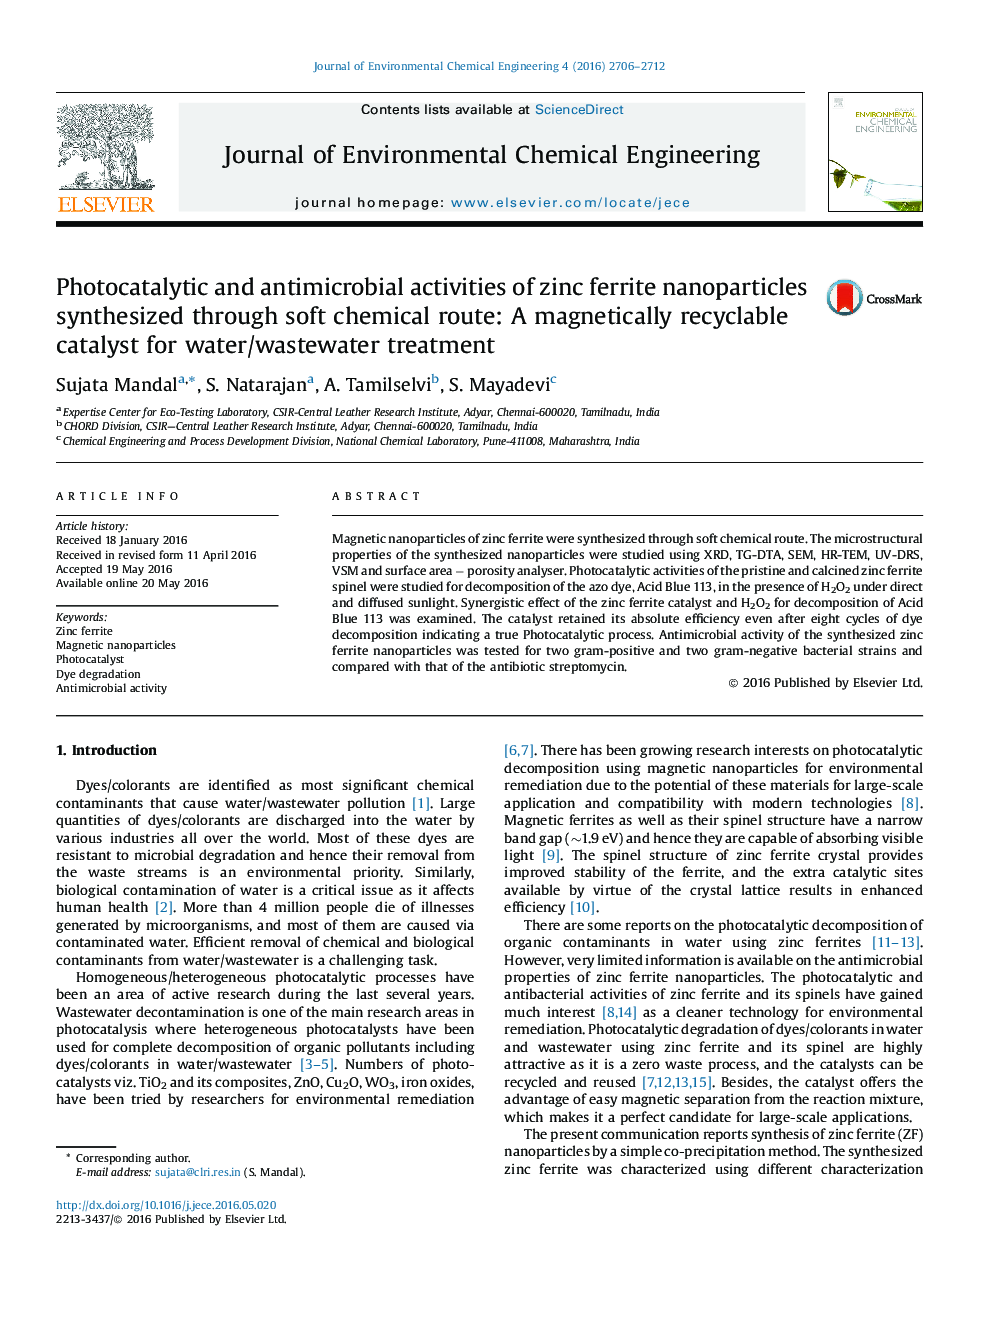 فعالیت فتوکاتالیستی و ضد میکروبی نانوذرات فریت روی سنتز از طریق مسیر شیمیایی نرم: یک کاتالیزور مغناطیسی قابل بازیافت برای تصفیه آب / فاضلاب